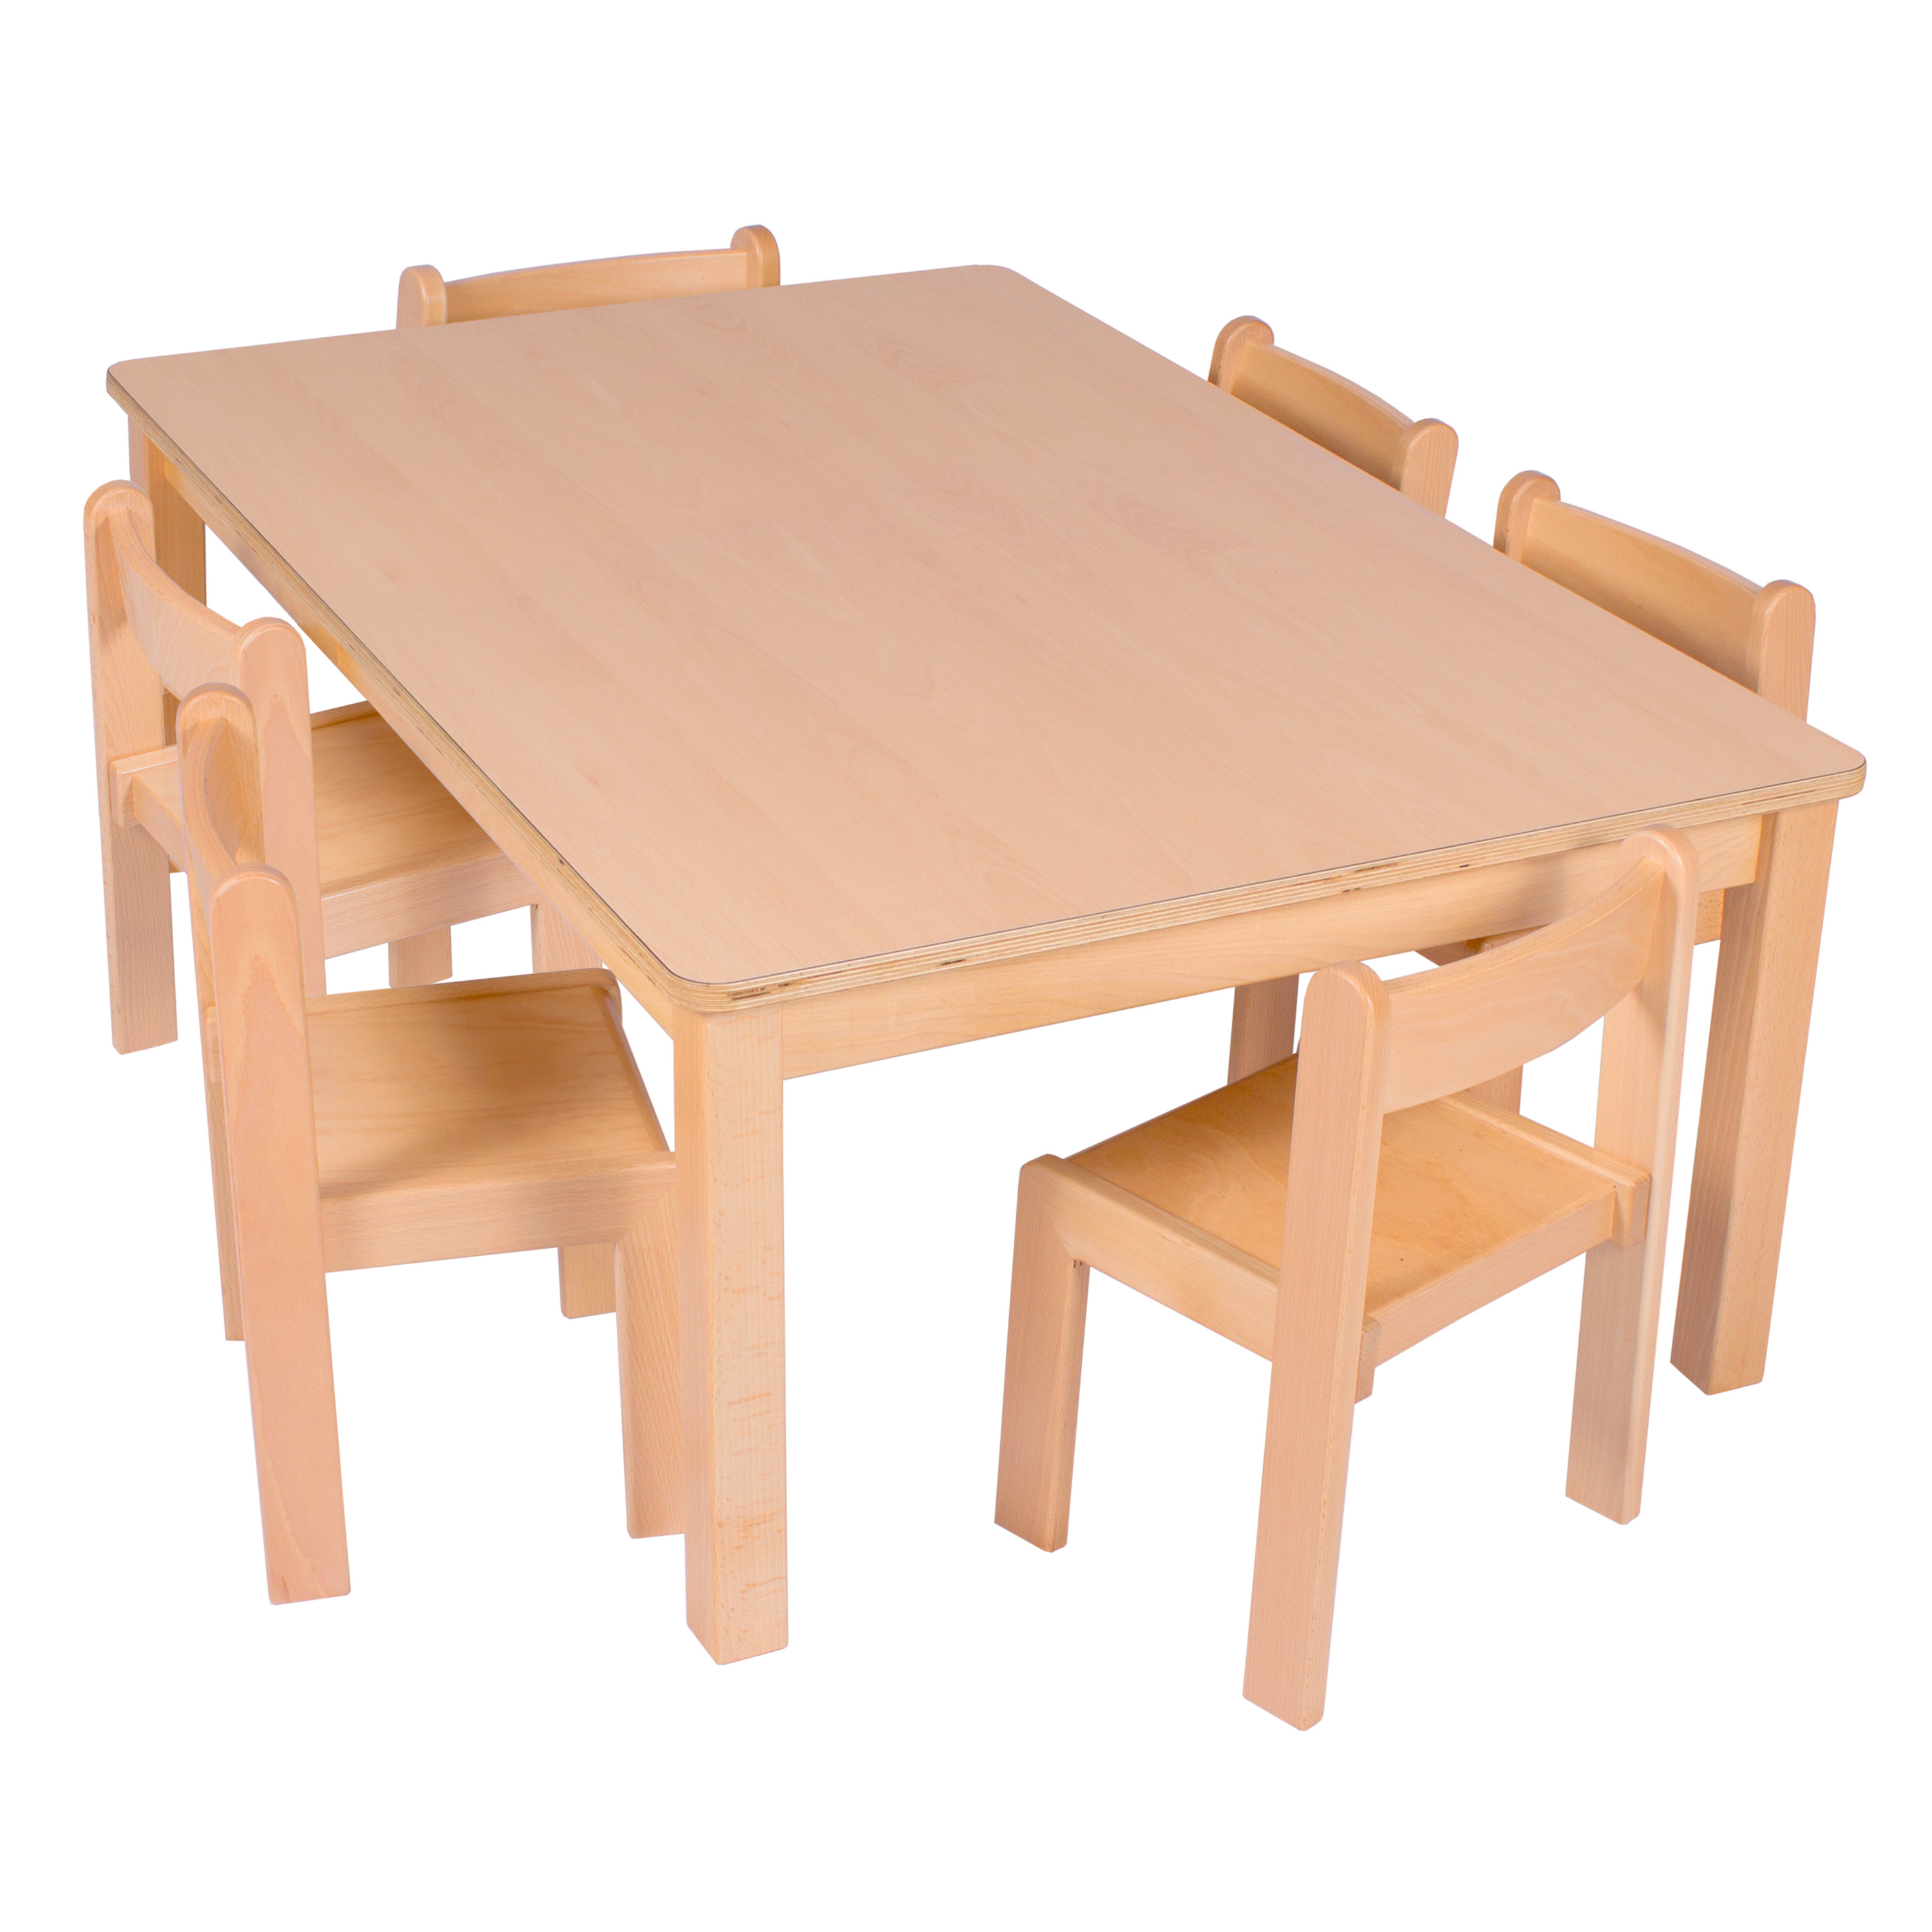 U3-Rechteck-Tisch 120 x 60 cm, Ecken gerundet, versch. Höhen